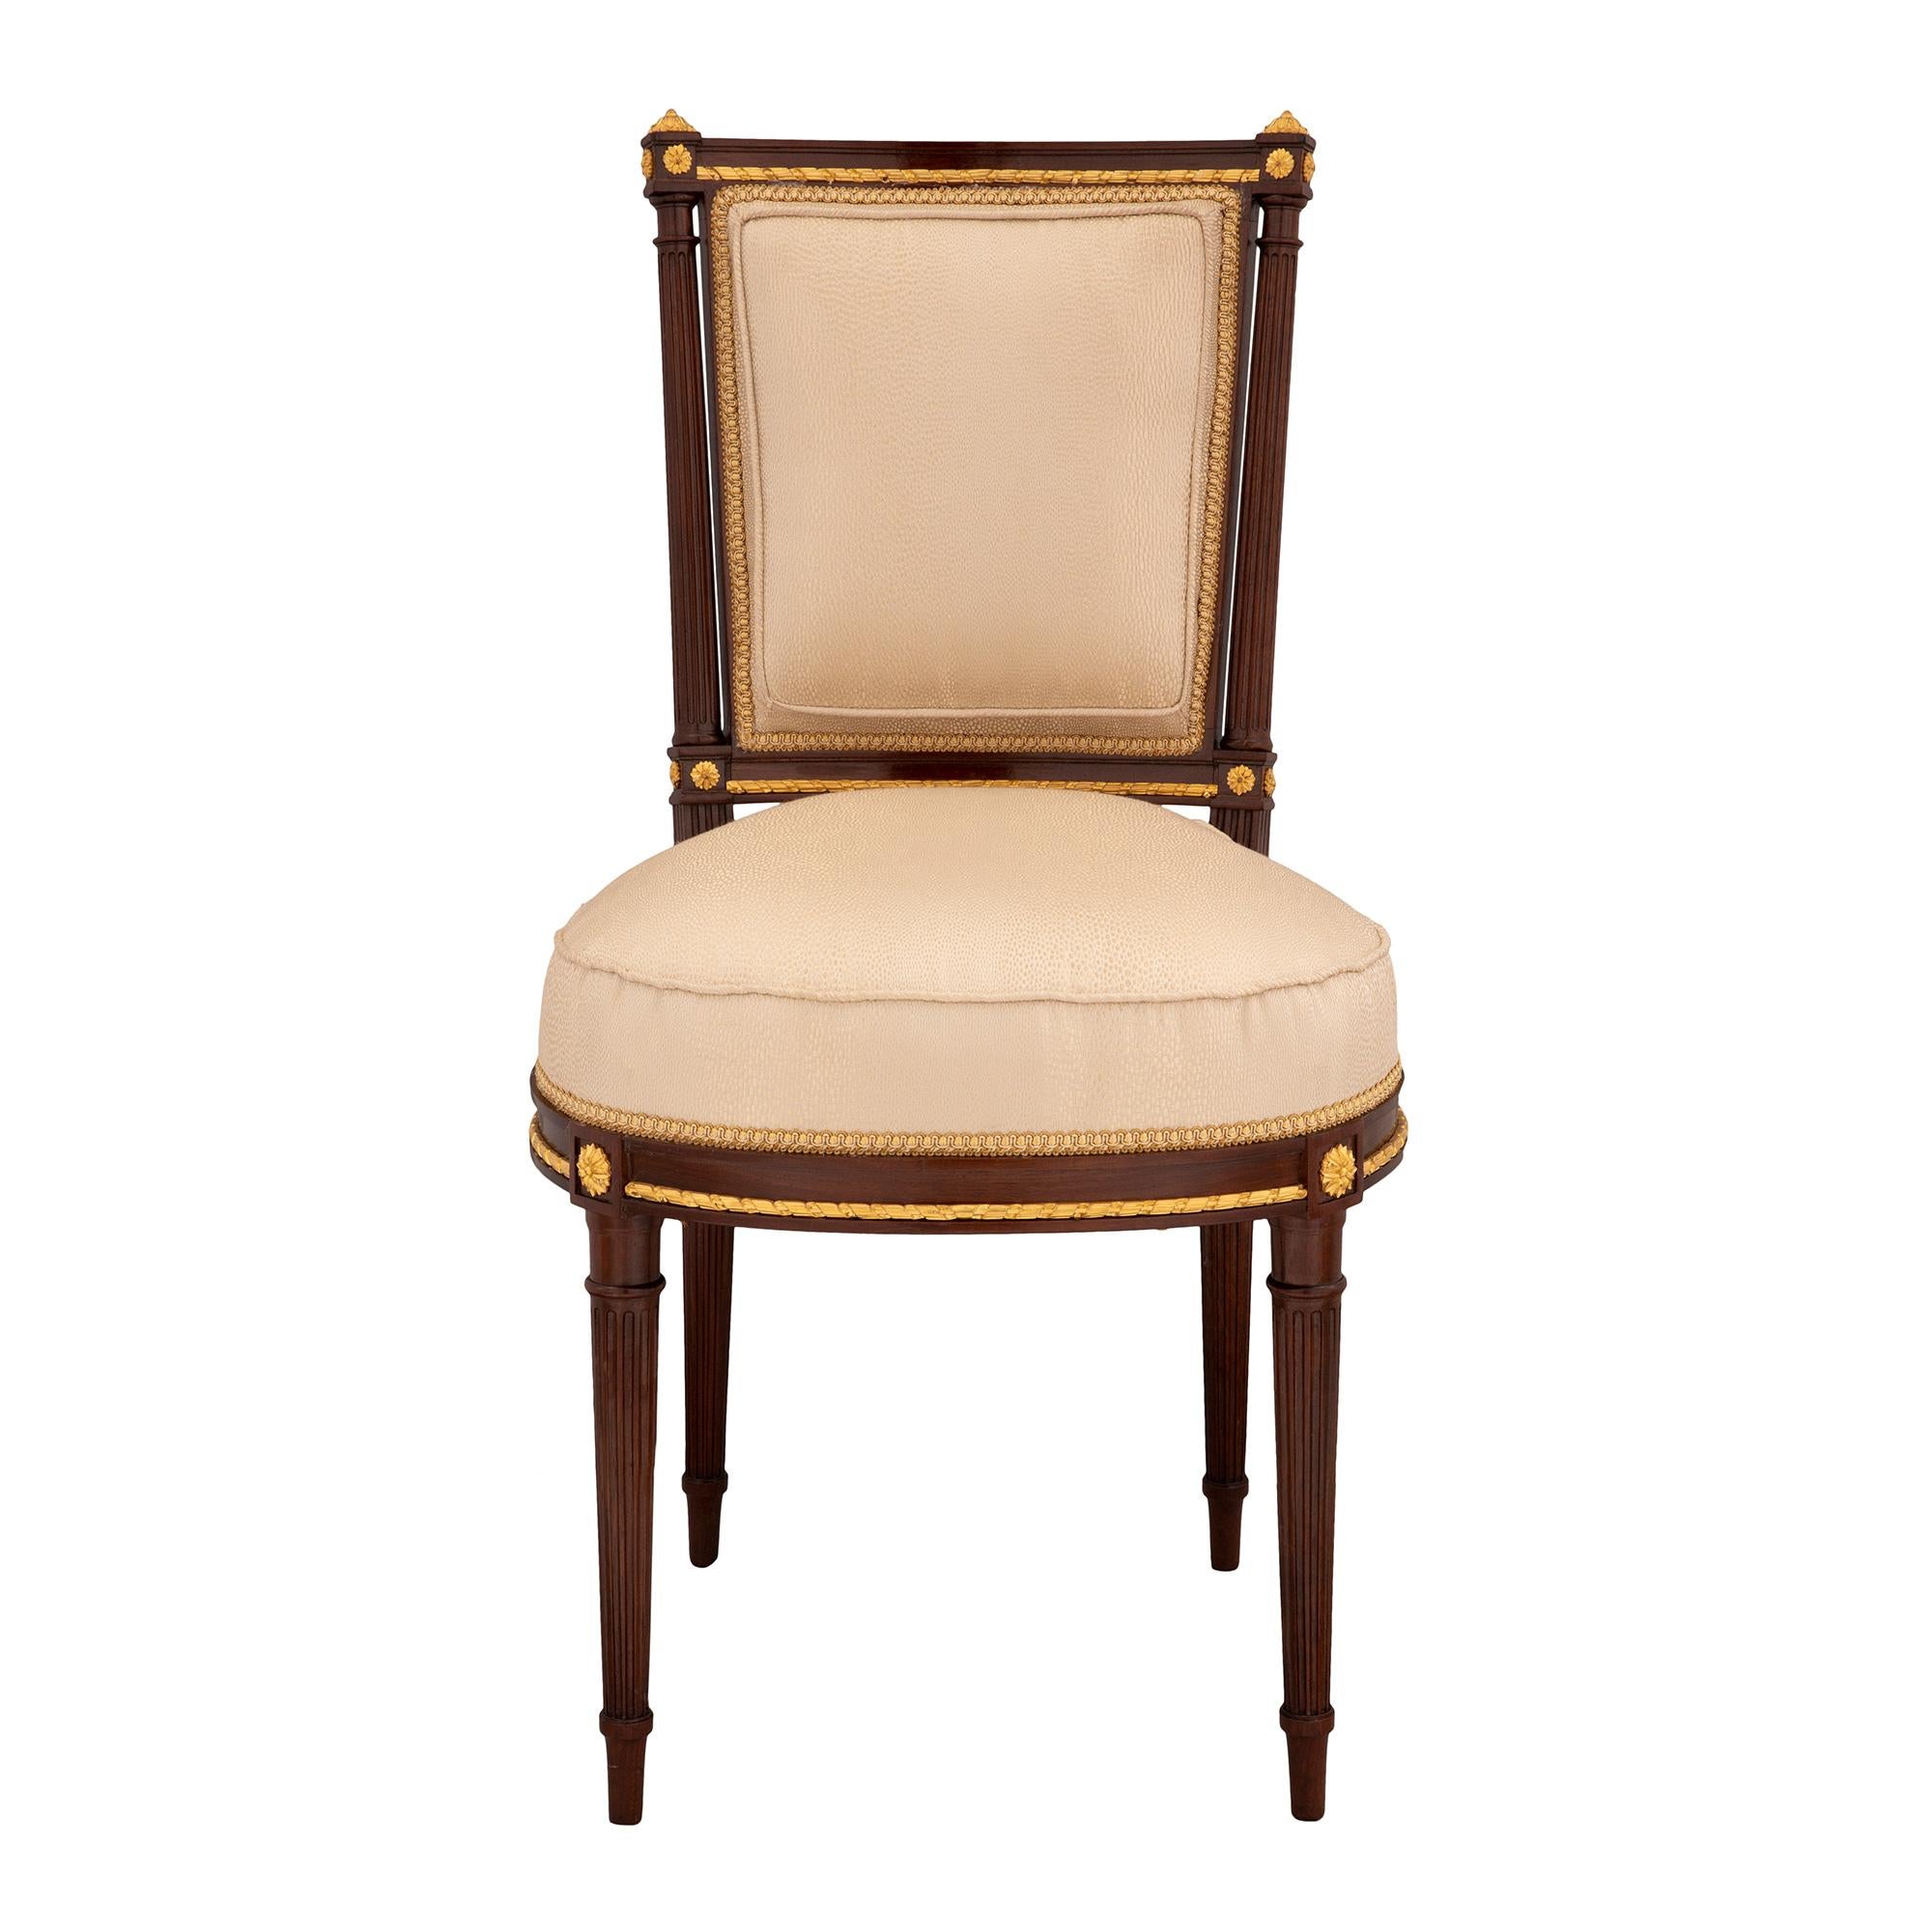 Un ensemble extrêmement élégant de quatre chaises d'appoint françaises du 19ème siècle, de style Louis XVI, en acajou et bois doré. Chaque chaise est surélevée par de minces pieds cannelés coniques circulaires avec une rosette en bois doré finement